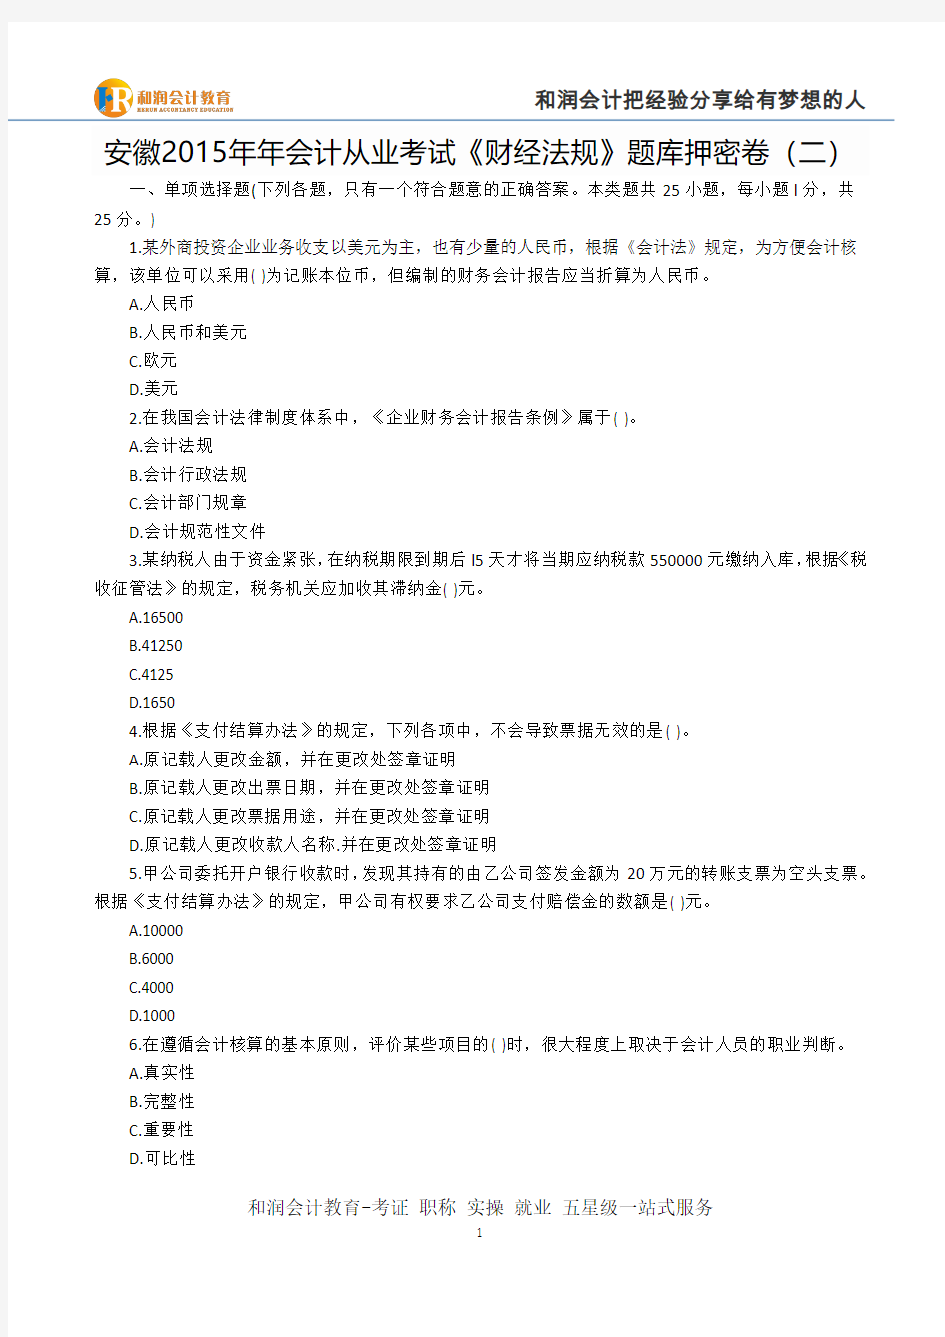 芜湖会计班-安徽2015年会计从业考试《财经法规》题库押密卷(二)